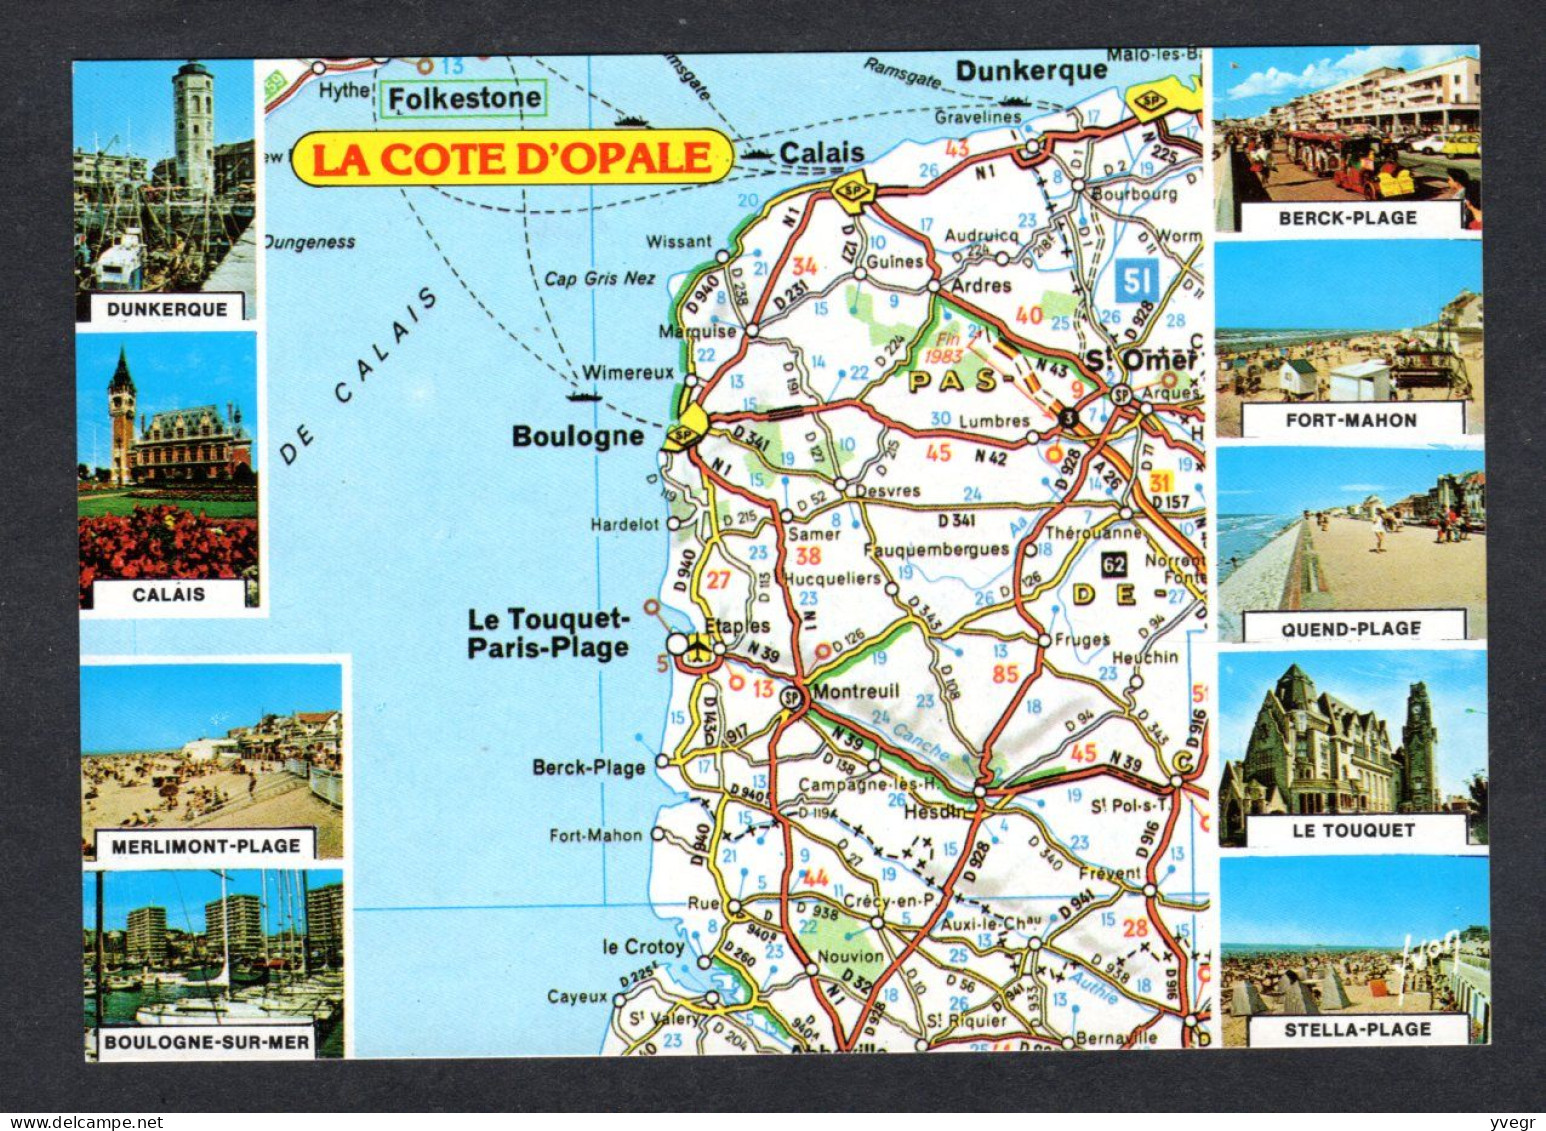 Carte Géographique - Cote D'Opale - Dunkerque, Calais, Wissant, Wimereux, Boulogne, Hardelot, Le Crotoy, Cayeux - Carte Geografiche